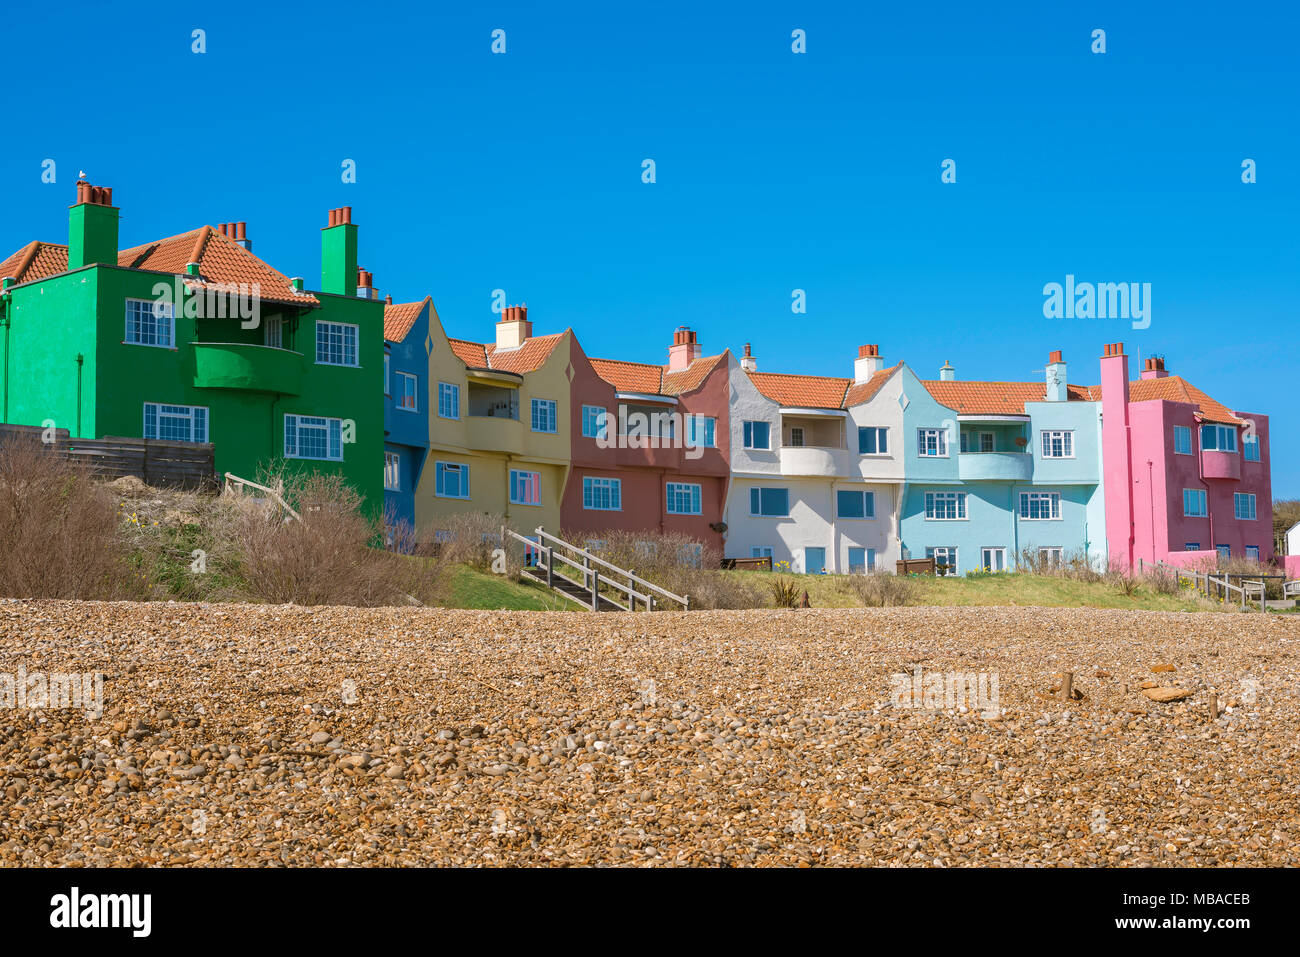 Maison colorée plage, vue sur une rangée colorée de maisons datant de 1937 situé sur la plage de Thorpeness sur la côte du Suffolk, Angleterre, Royaume-Uni Banque D'Images